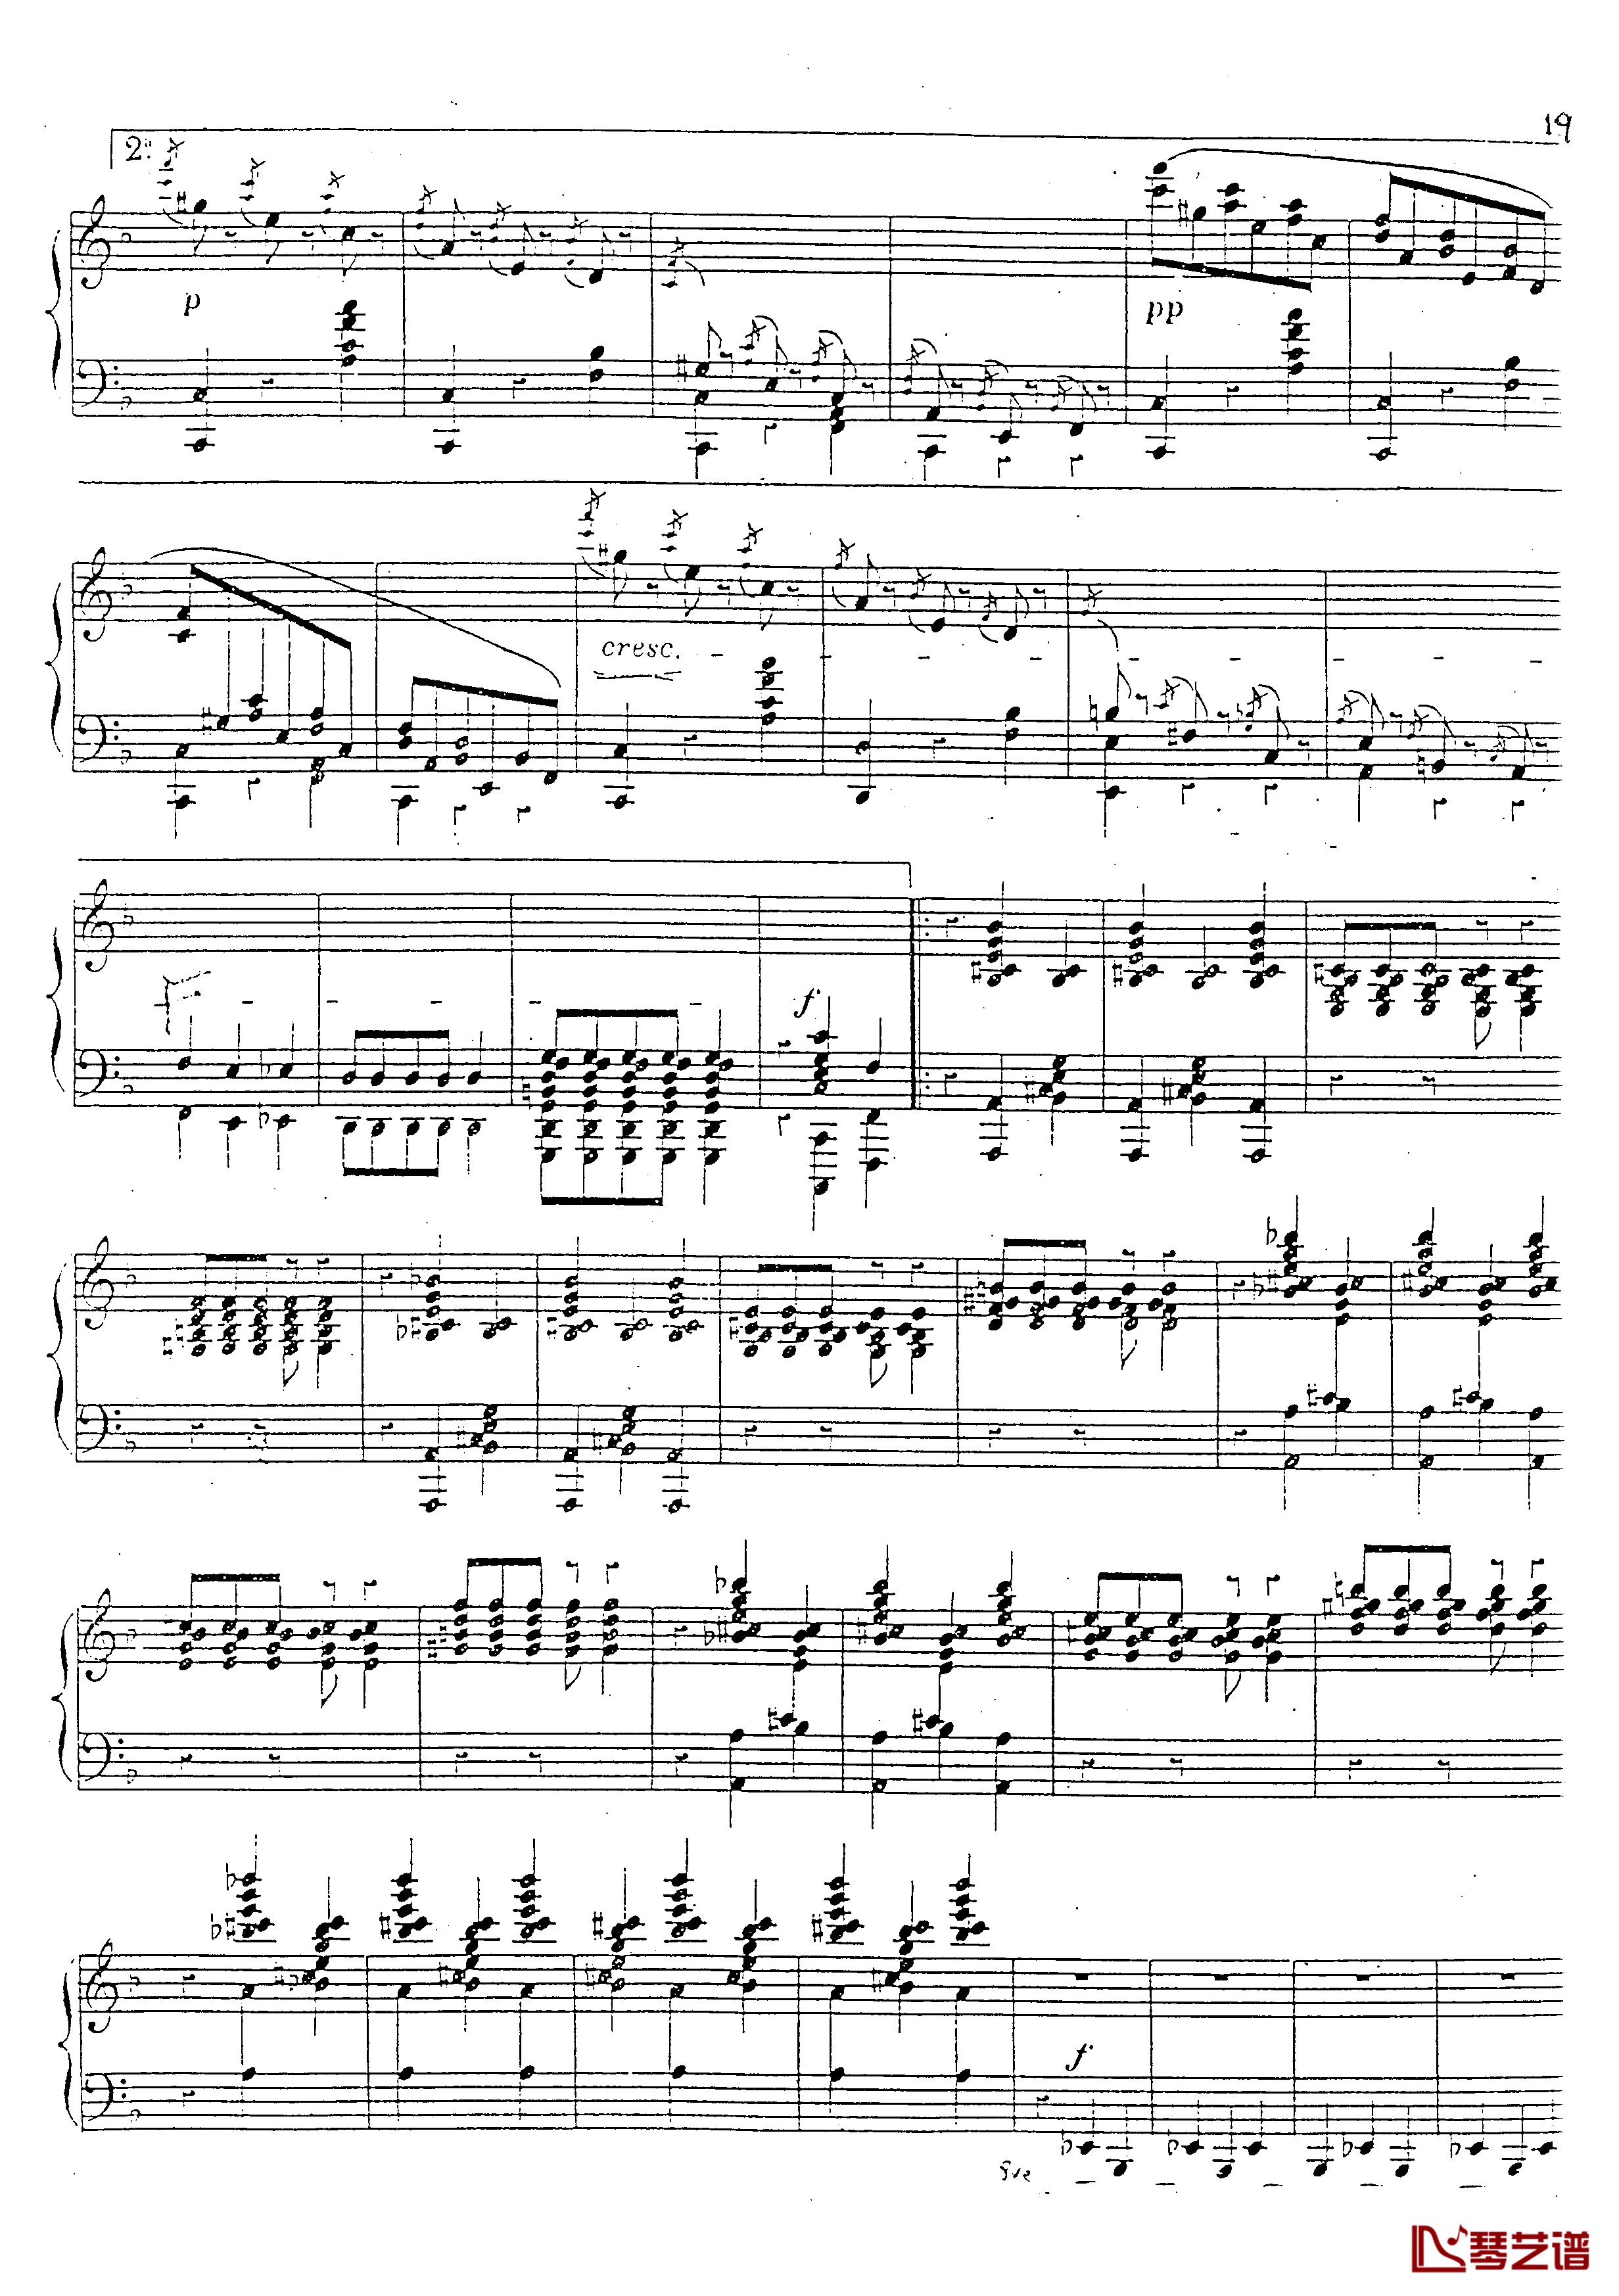 a小调第四钢琴奏鸣曲钢琴谱-安东 鲁宾斯坦- Op.10020